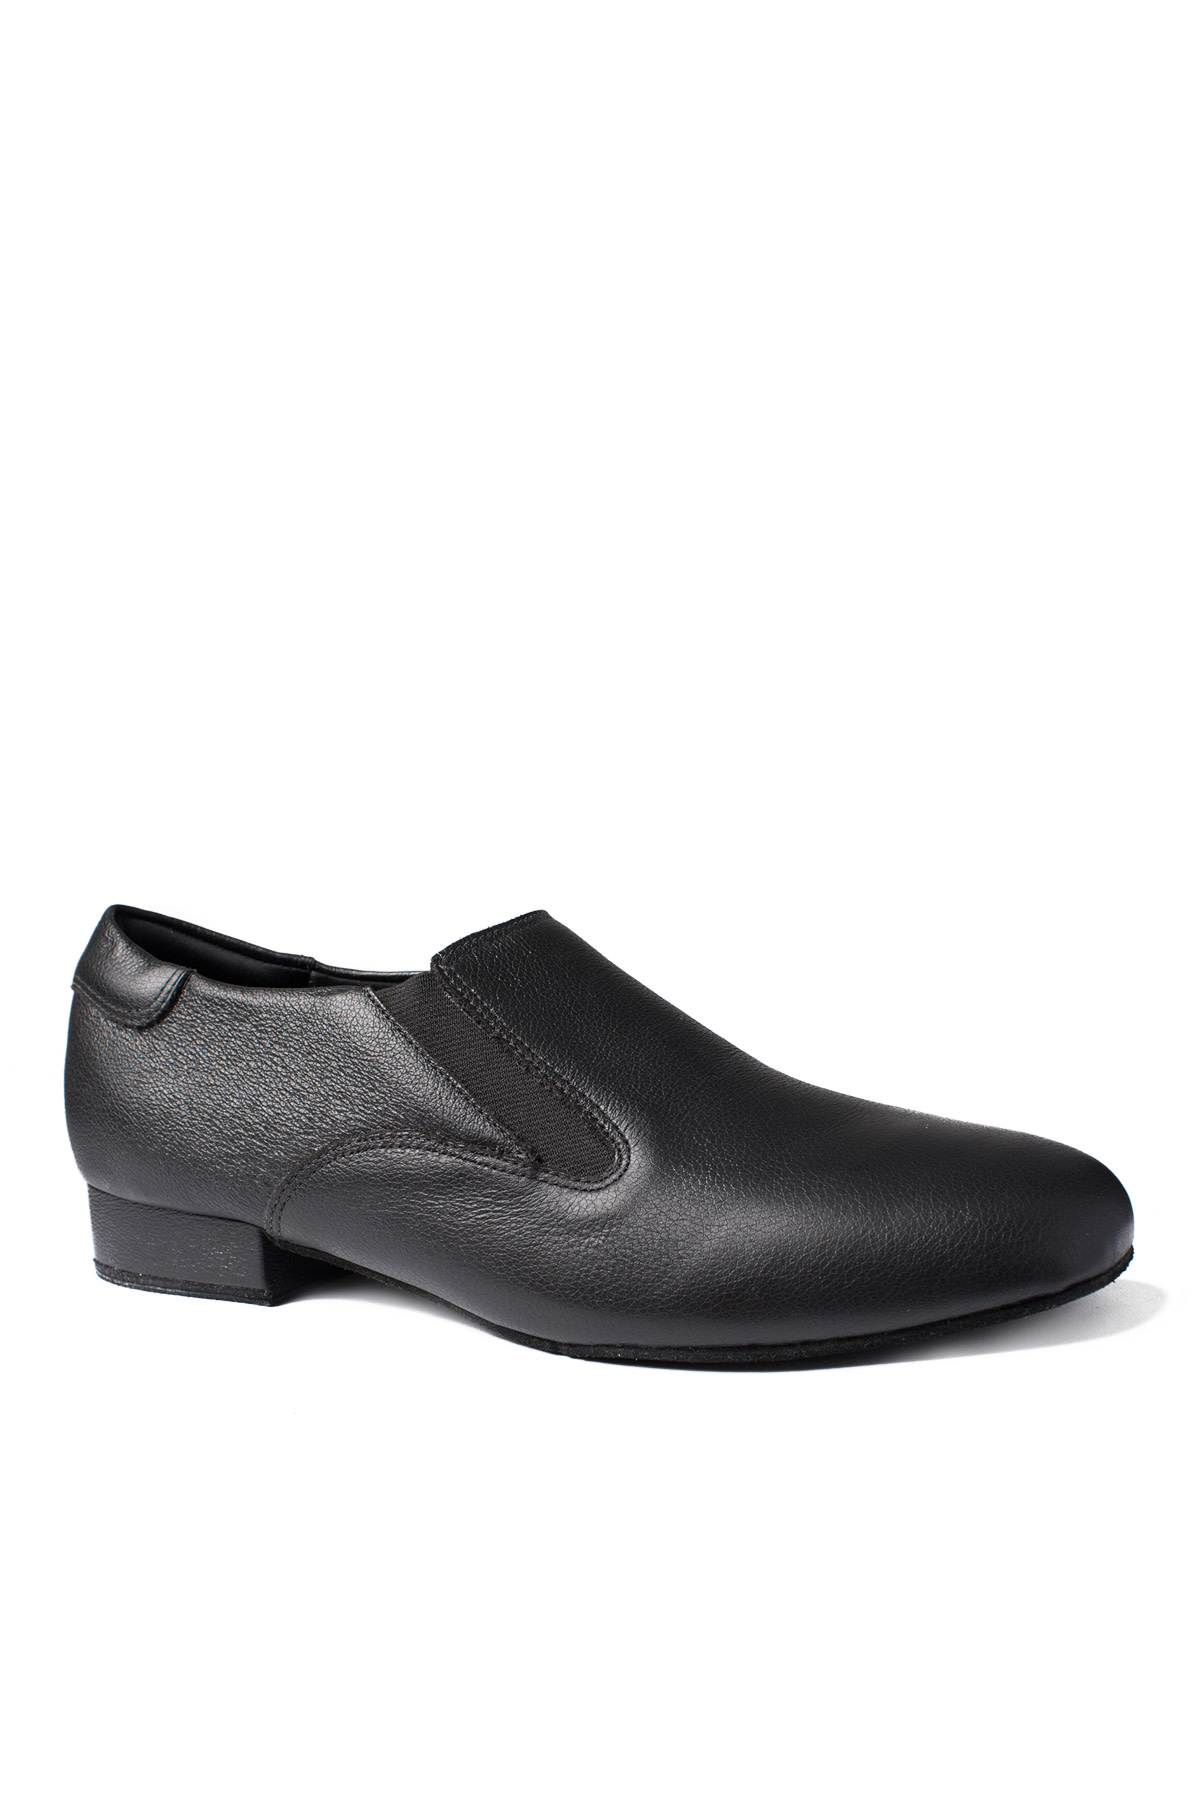 So Danca Men's Ballroom Dance Shoes So Danca BL-106, Slip On